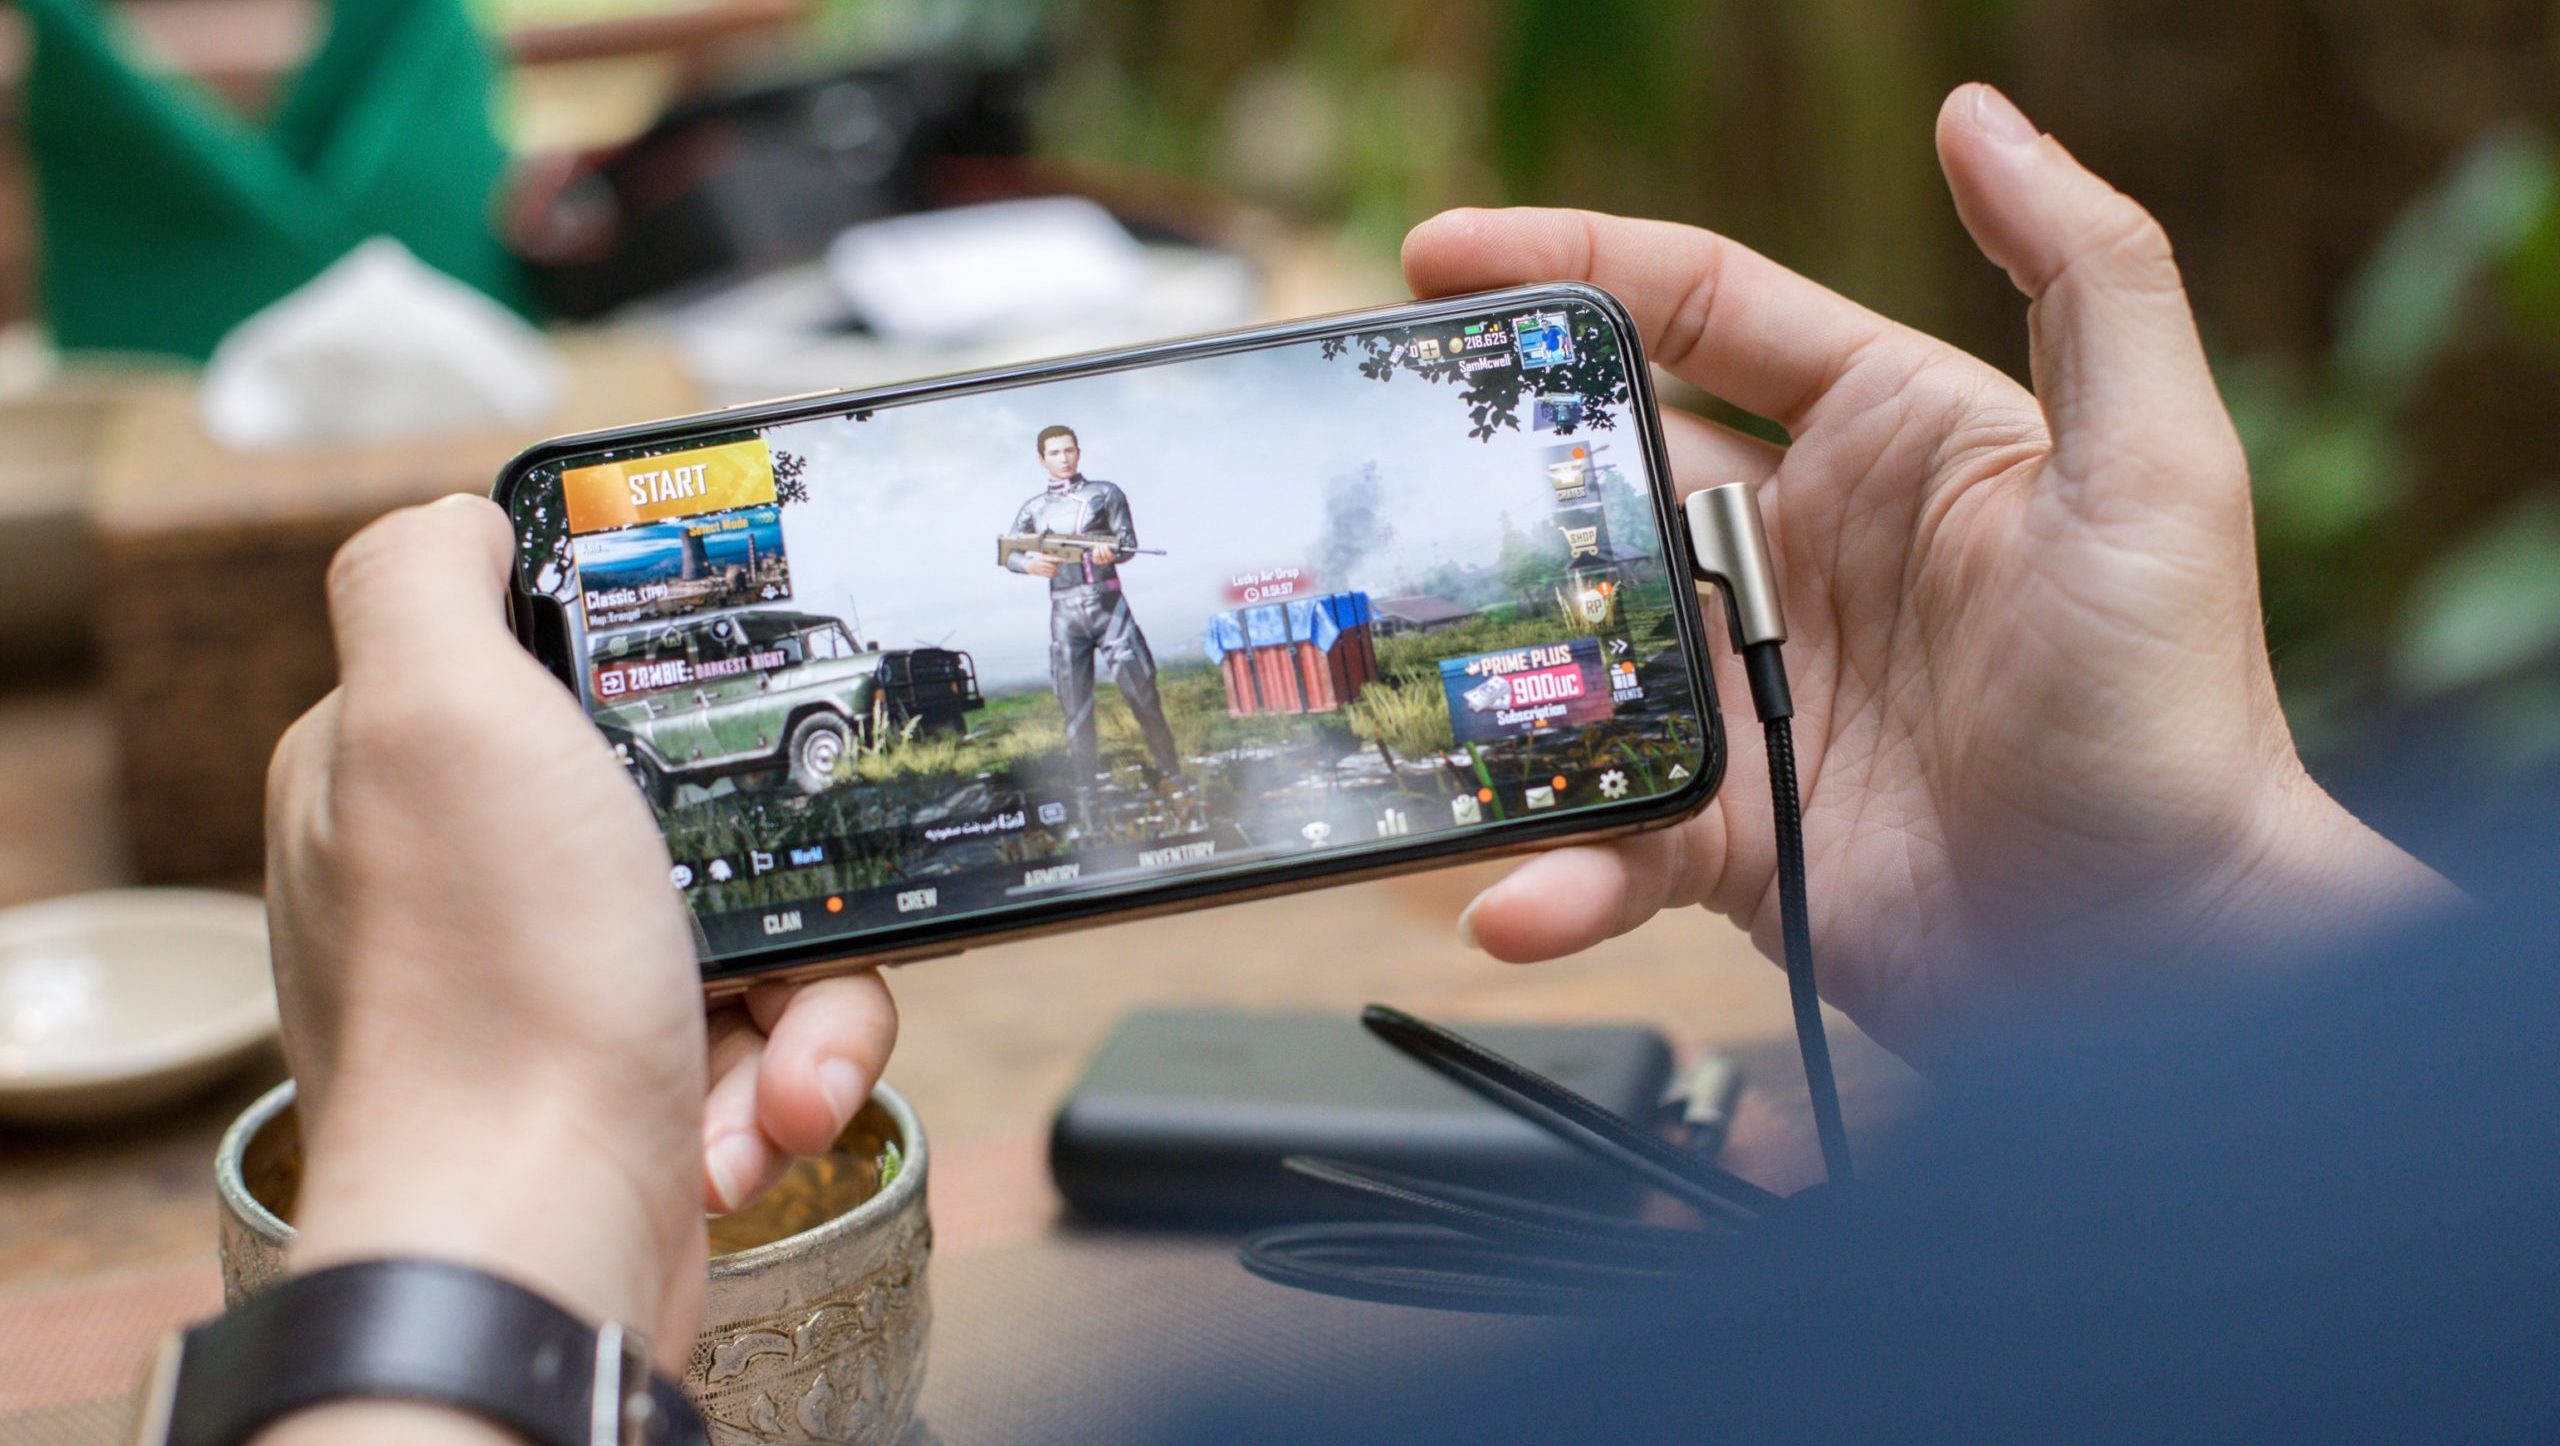 El celular es la nueva consola capaz de engancharte al ‘gaming’… y las marcas lo saben